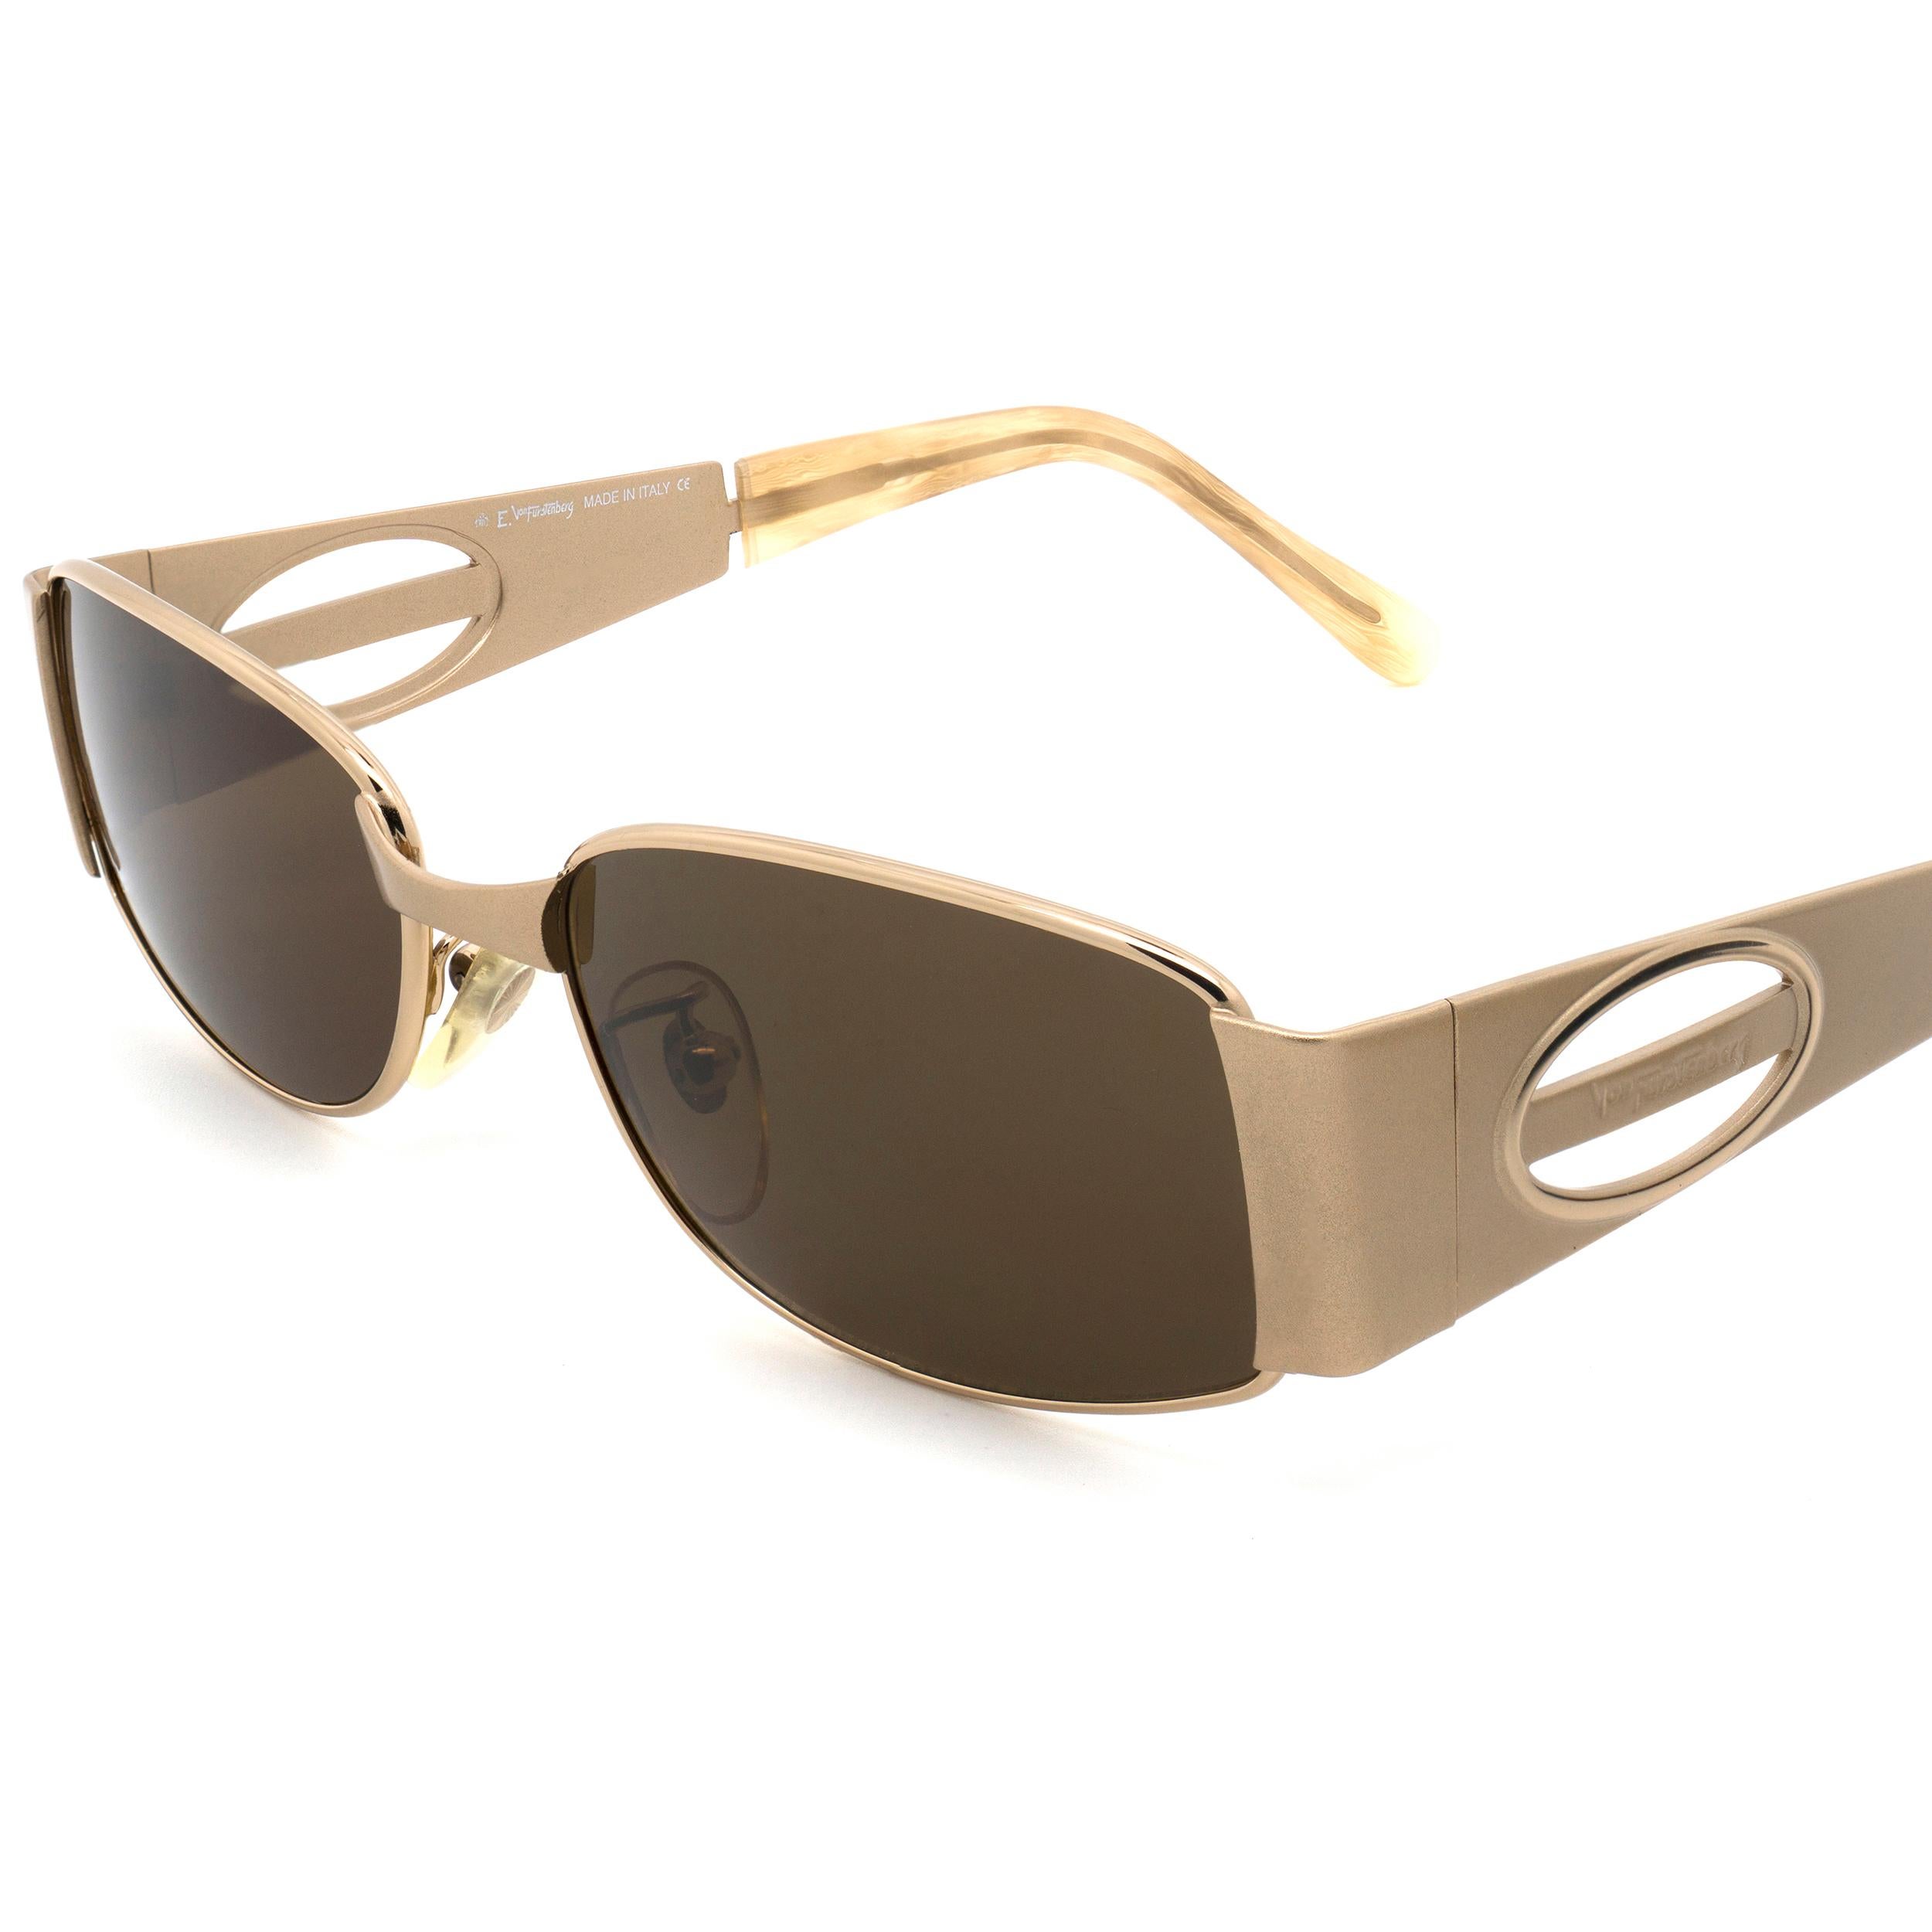 Brown Von Furstenberg vintage sunglasses 80s For Sale